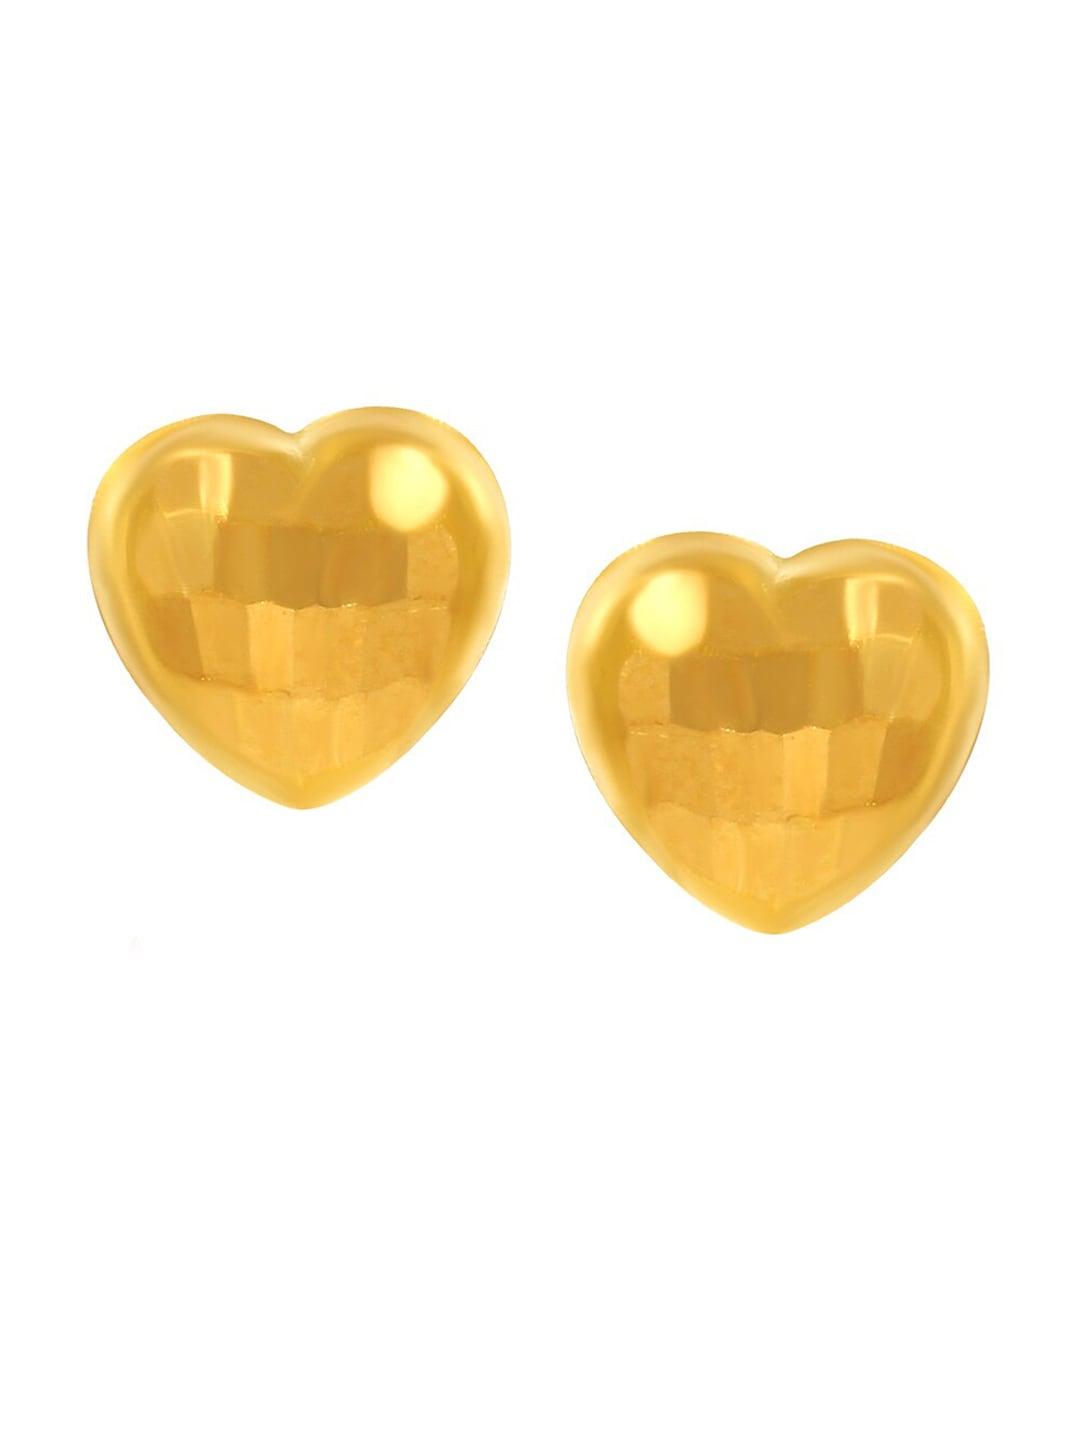 senco-radiating-love-22kt-gold-stud-earrings-0.9gm